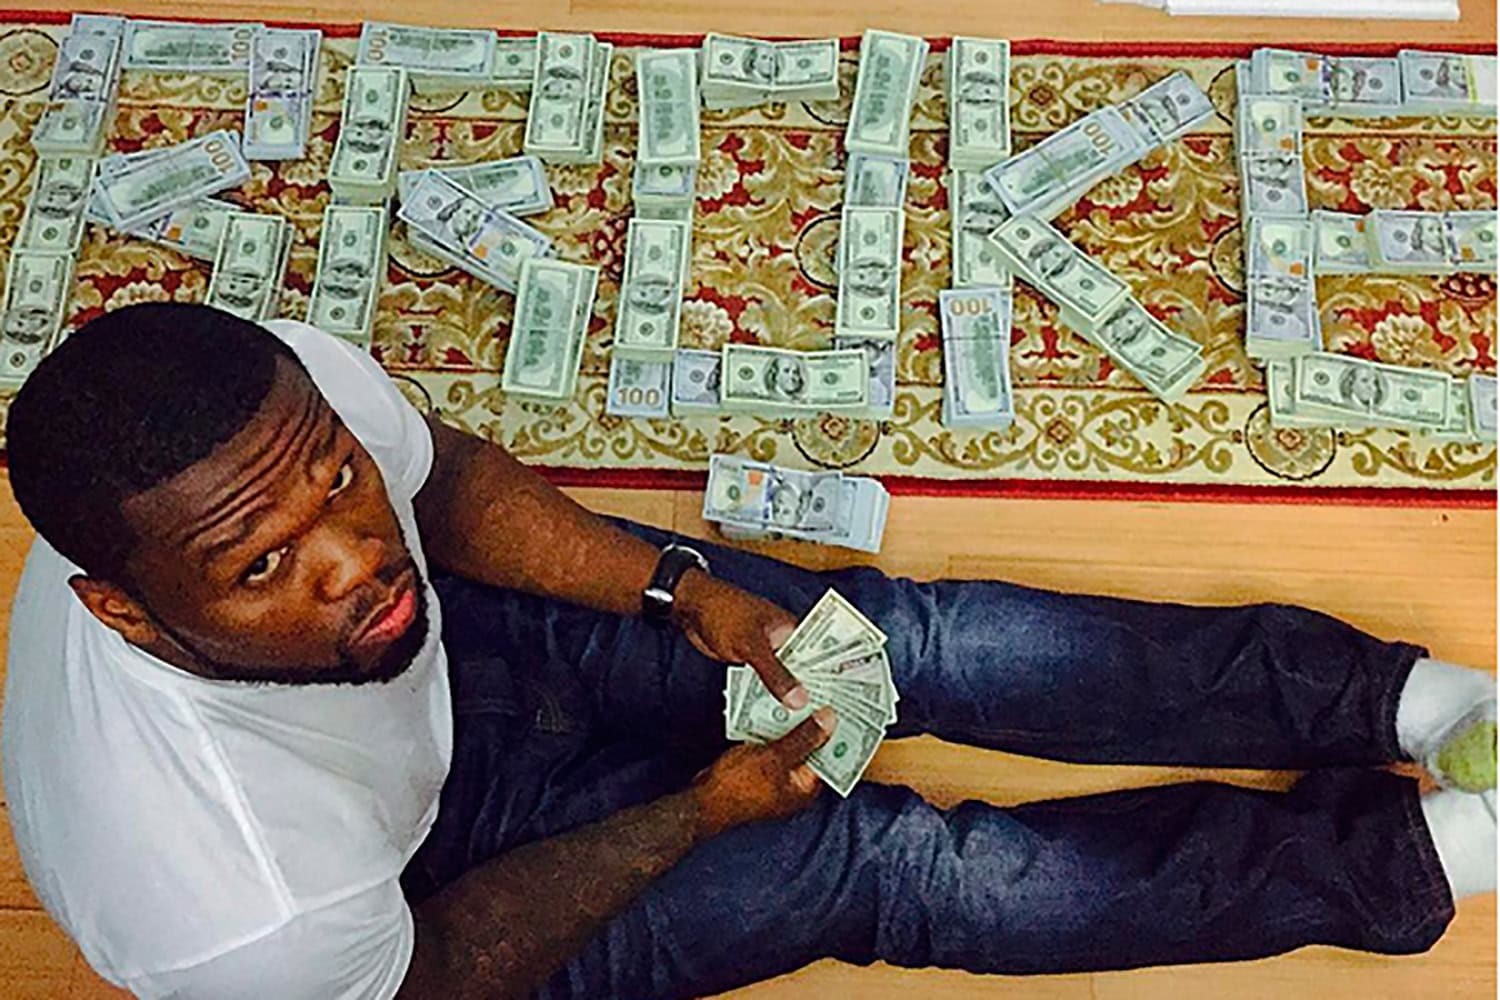 El ‘arruinado’ rapero 50 Cent se burla de la autoridad publicando fotos posando con miles de dólares